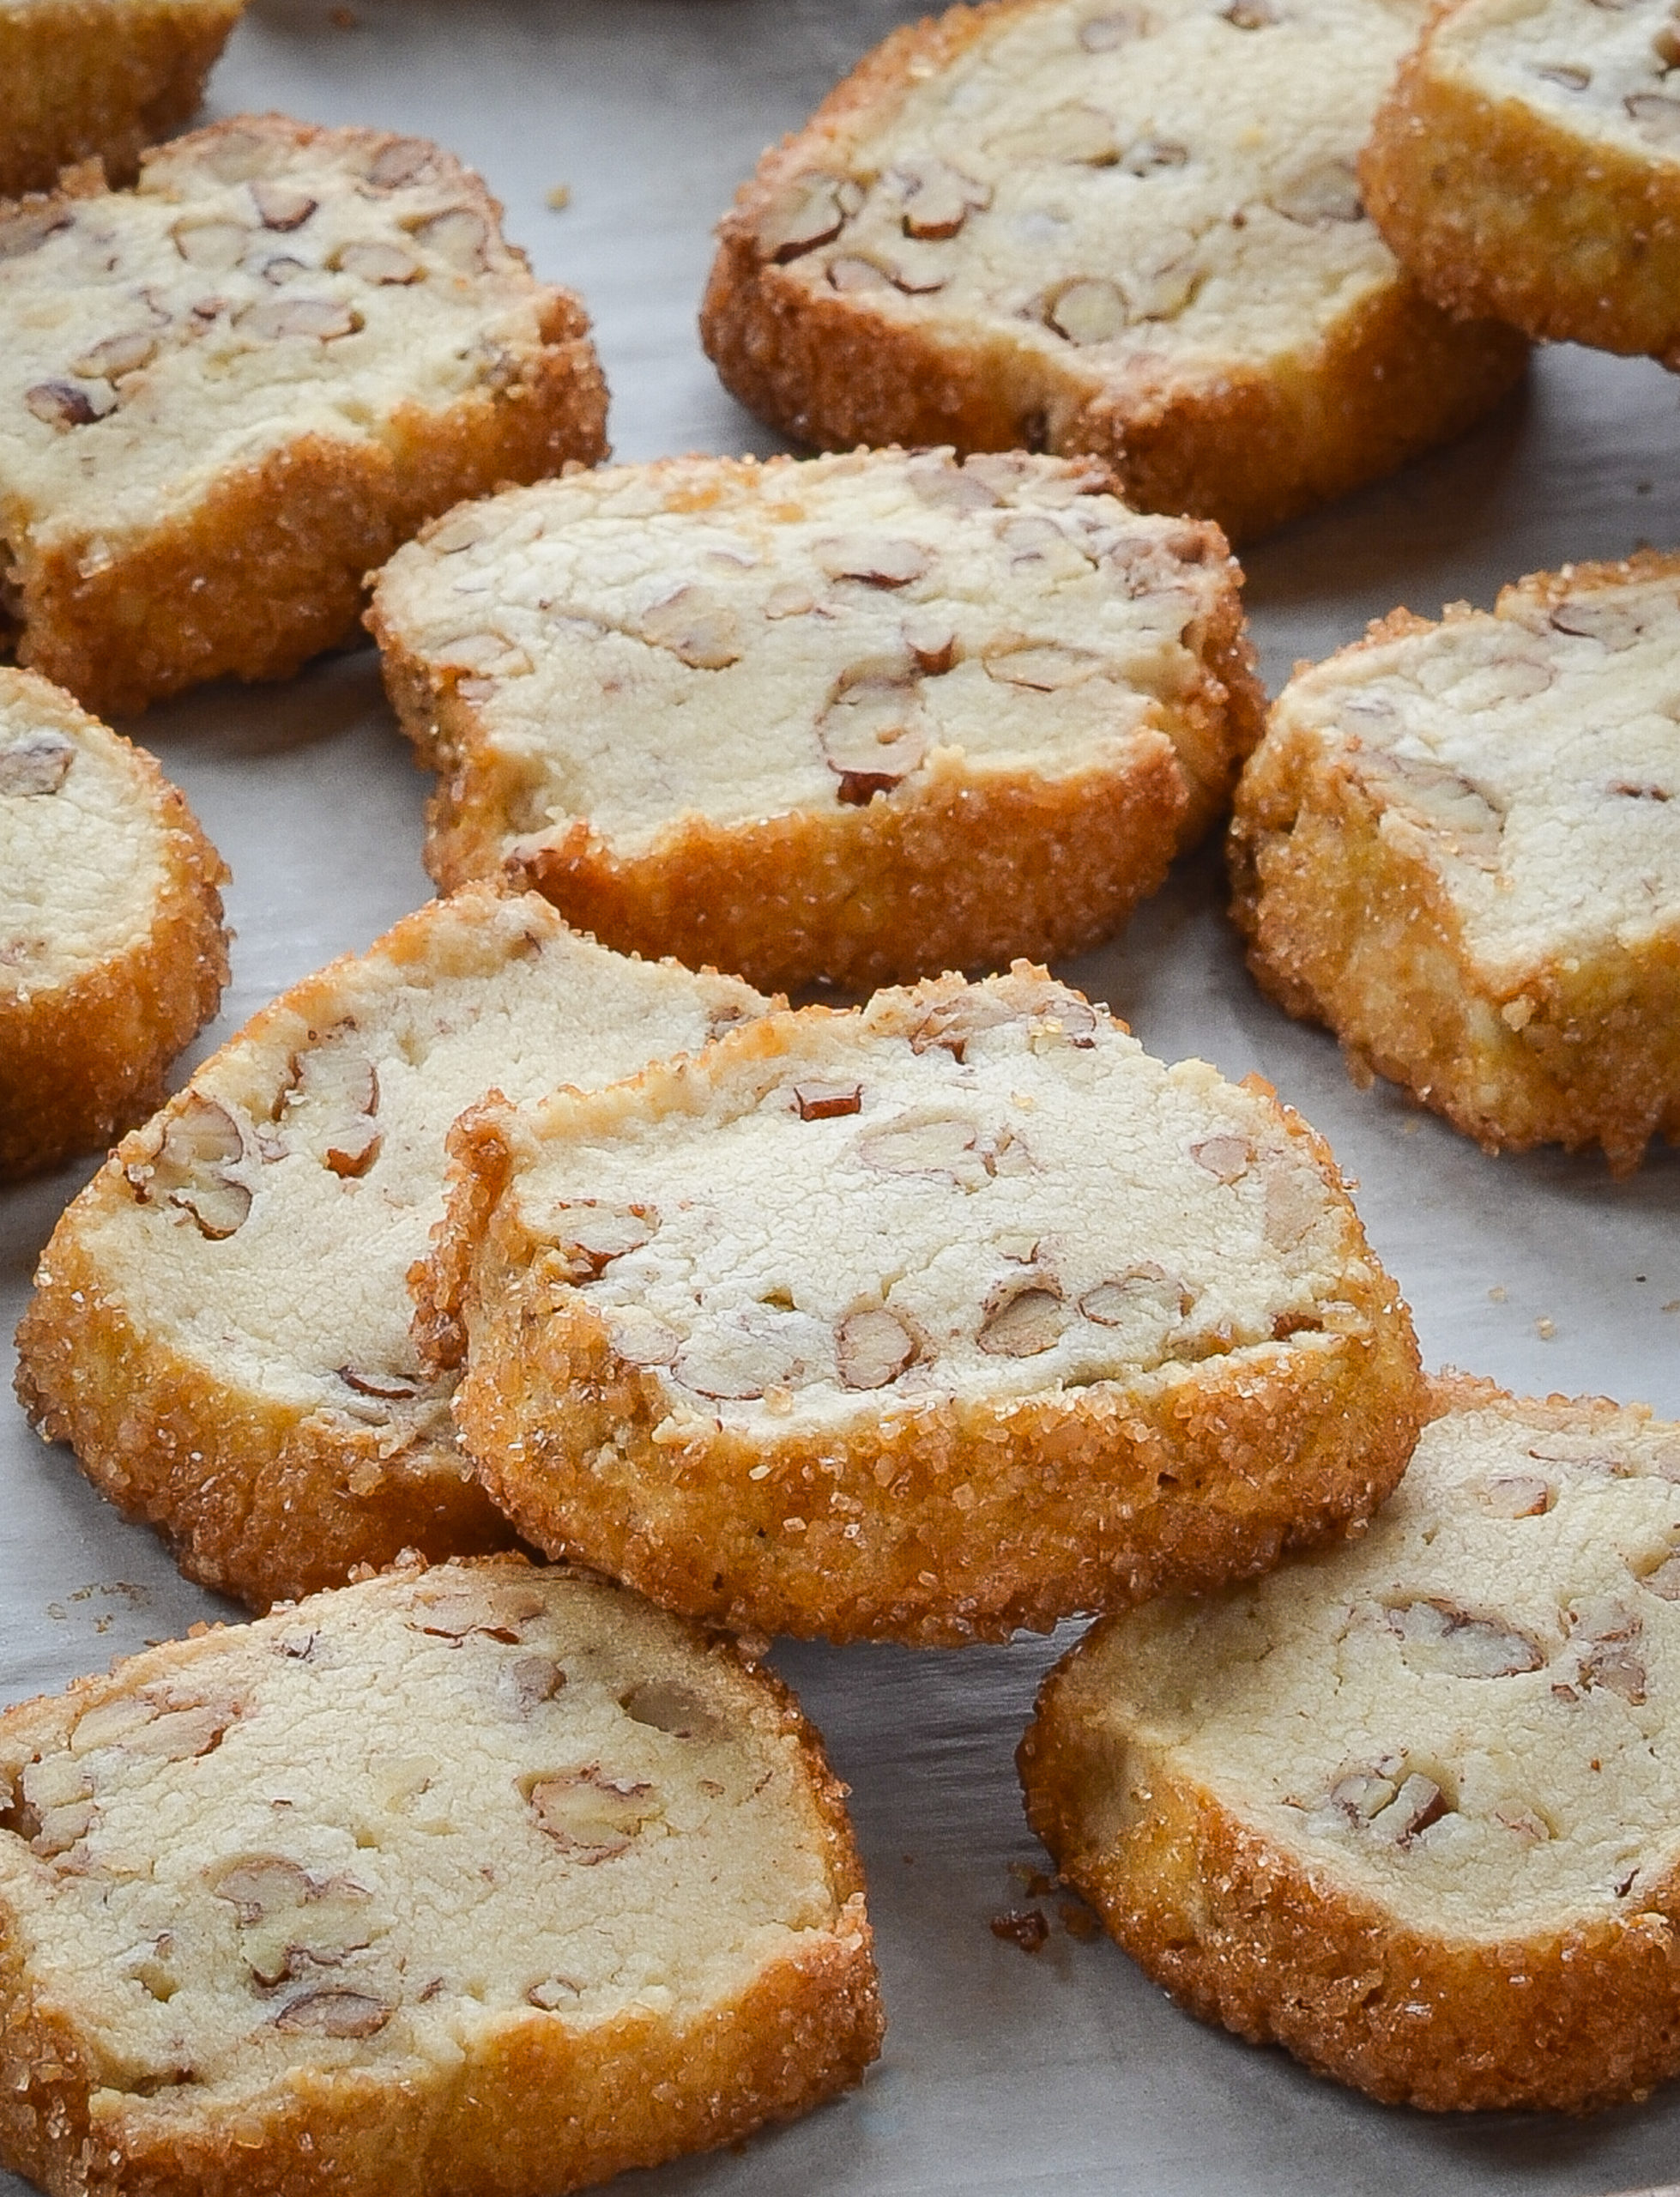 https://www.onceuponachef.com/images/2020/03/Pecan-Shortbread-Cookies-scaled.jpg